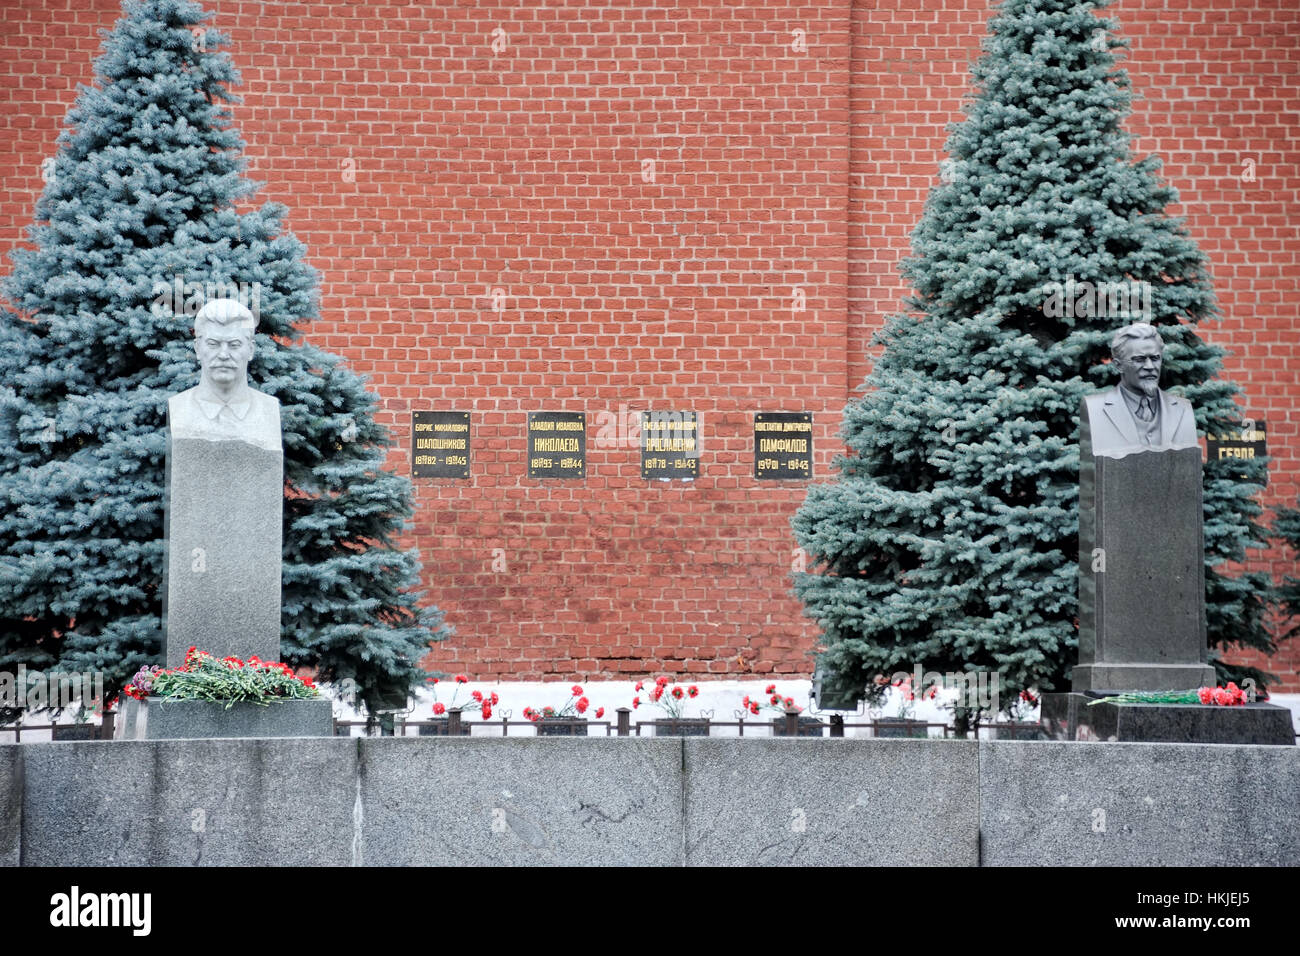 = Gräber von Stalin und Kalinin = Gräber von Josef Stalin (auf der linken Seite) und Mikhail Kalinin (rechts) in der Nekropole an der Kremlmauer auf rot Futtertrog Stockfoto